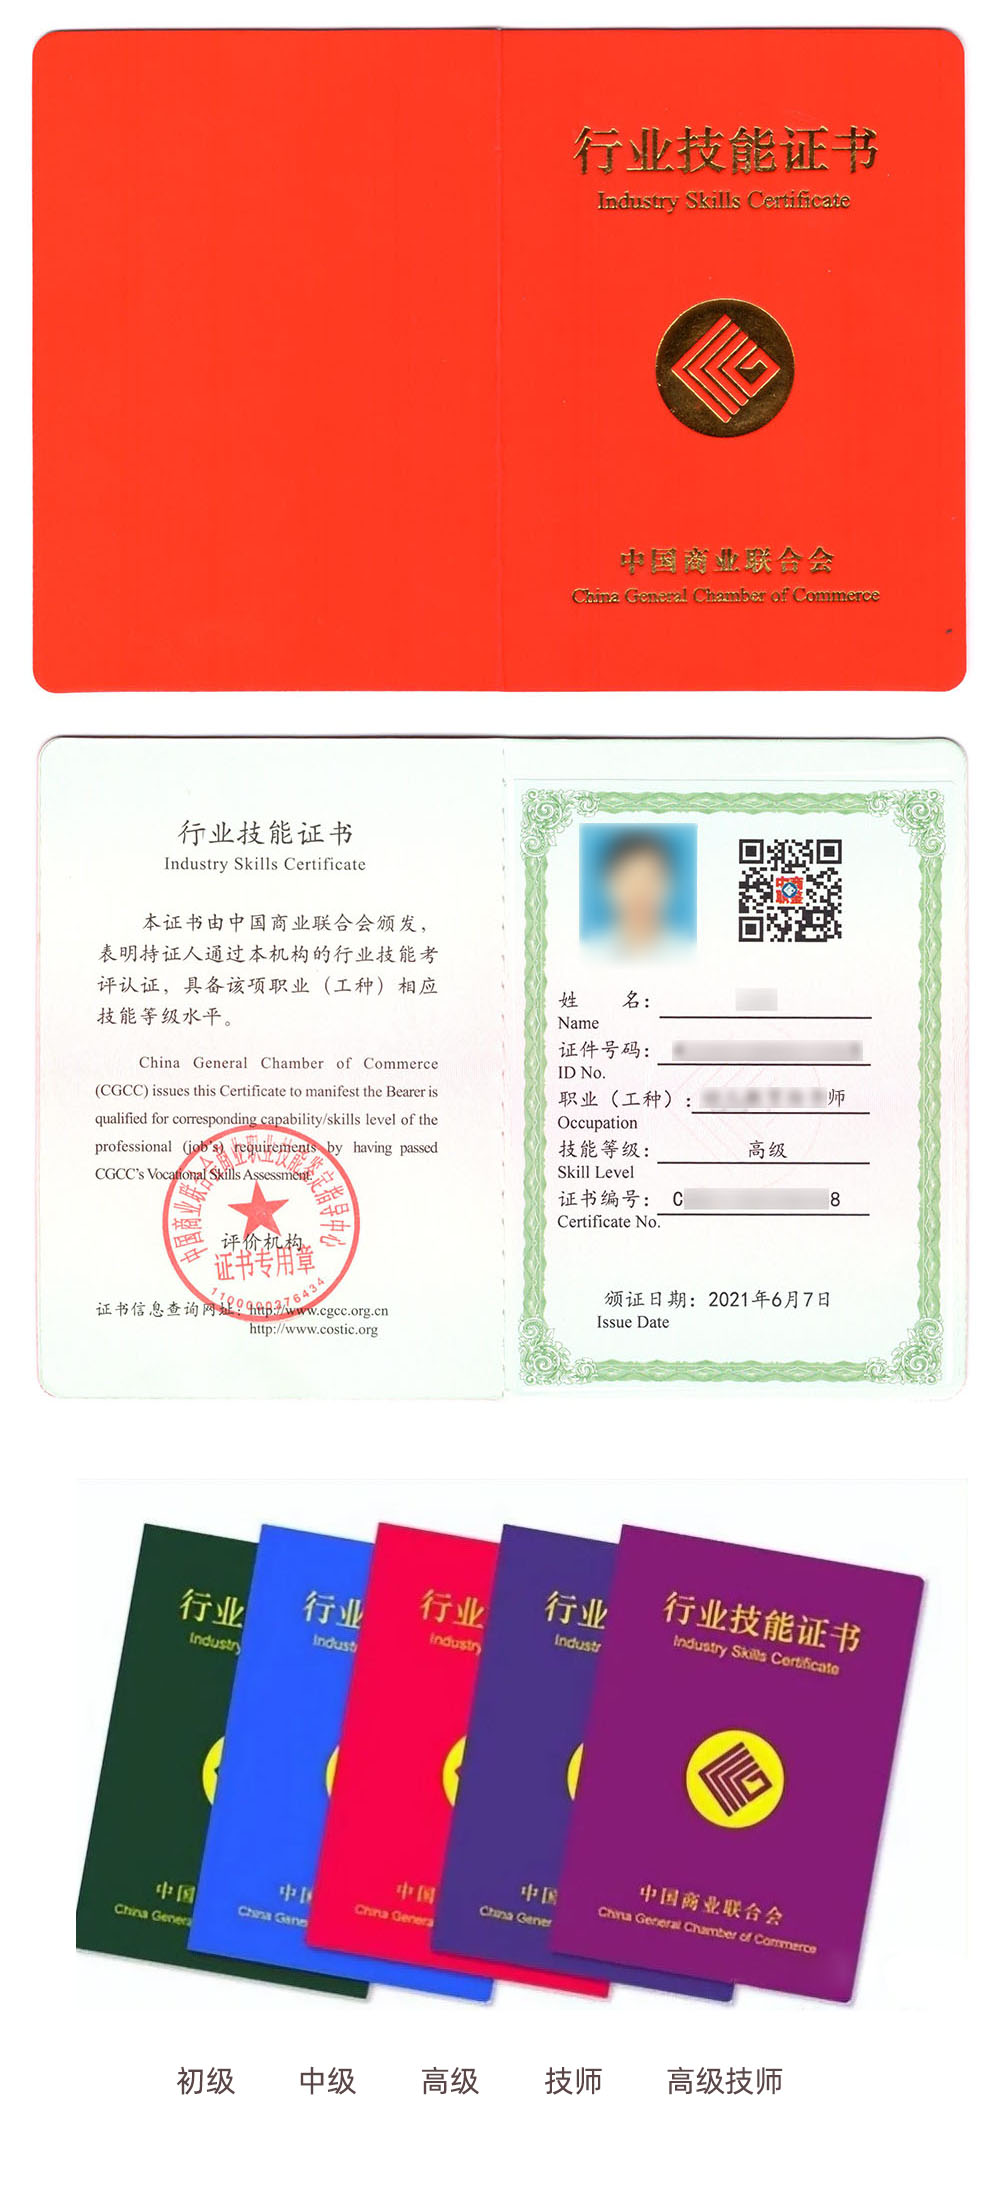 中国商业联合会商业职业技能鉴定中心 行业技能证书 网络工程师证证书样本